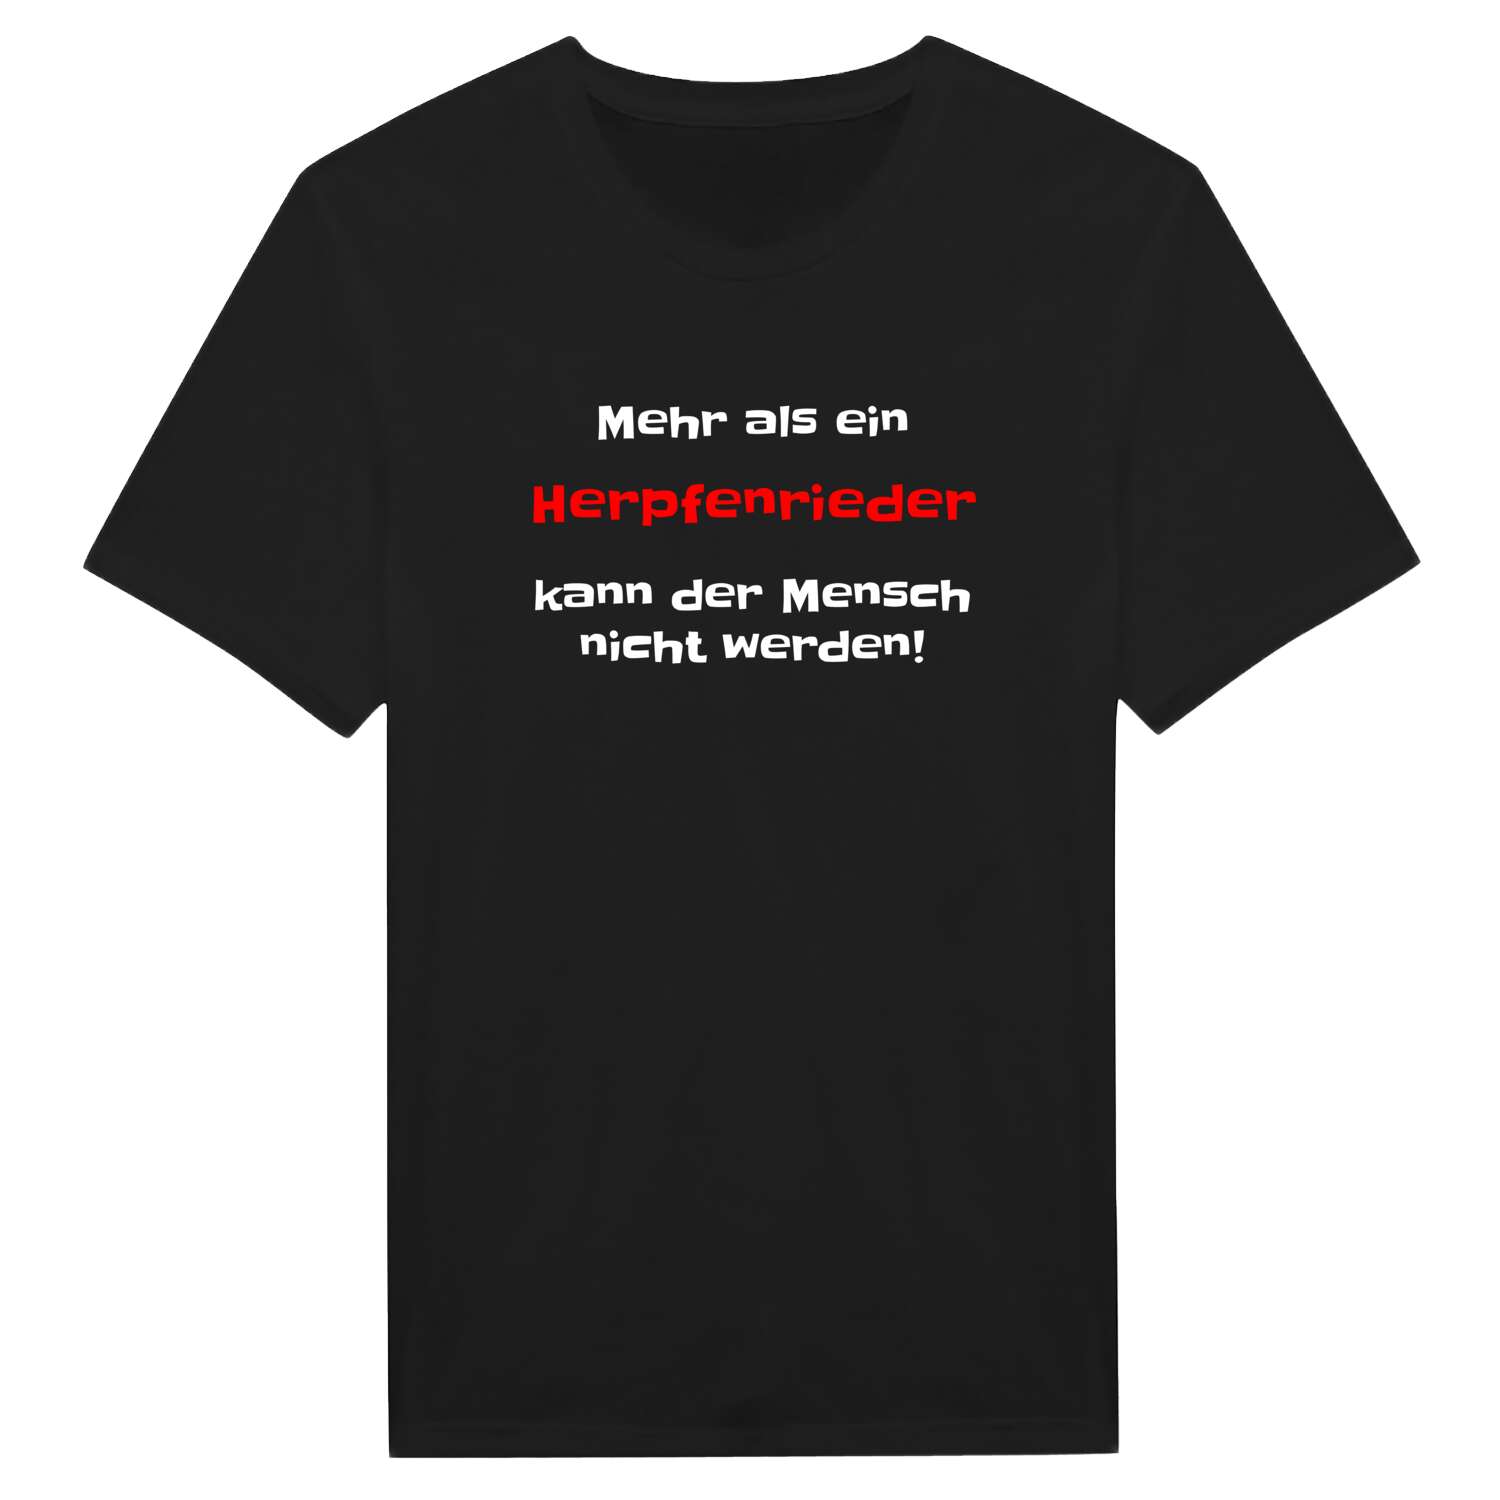 Herpfenried T-Shirt »Mehr als ein«